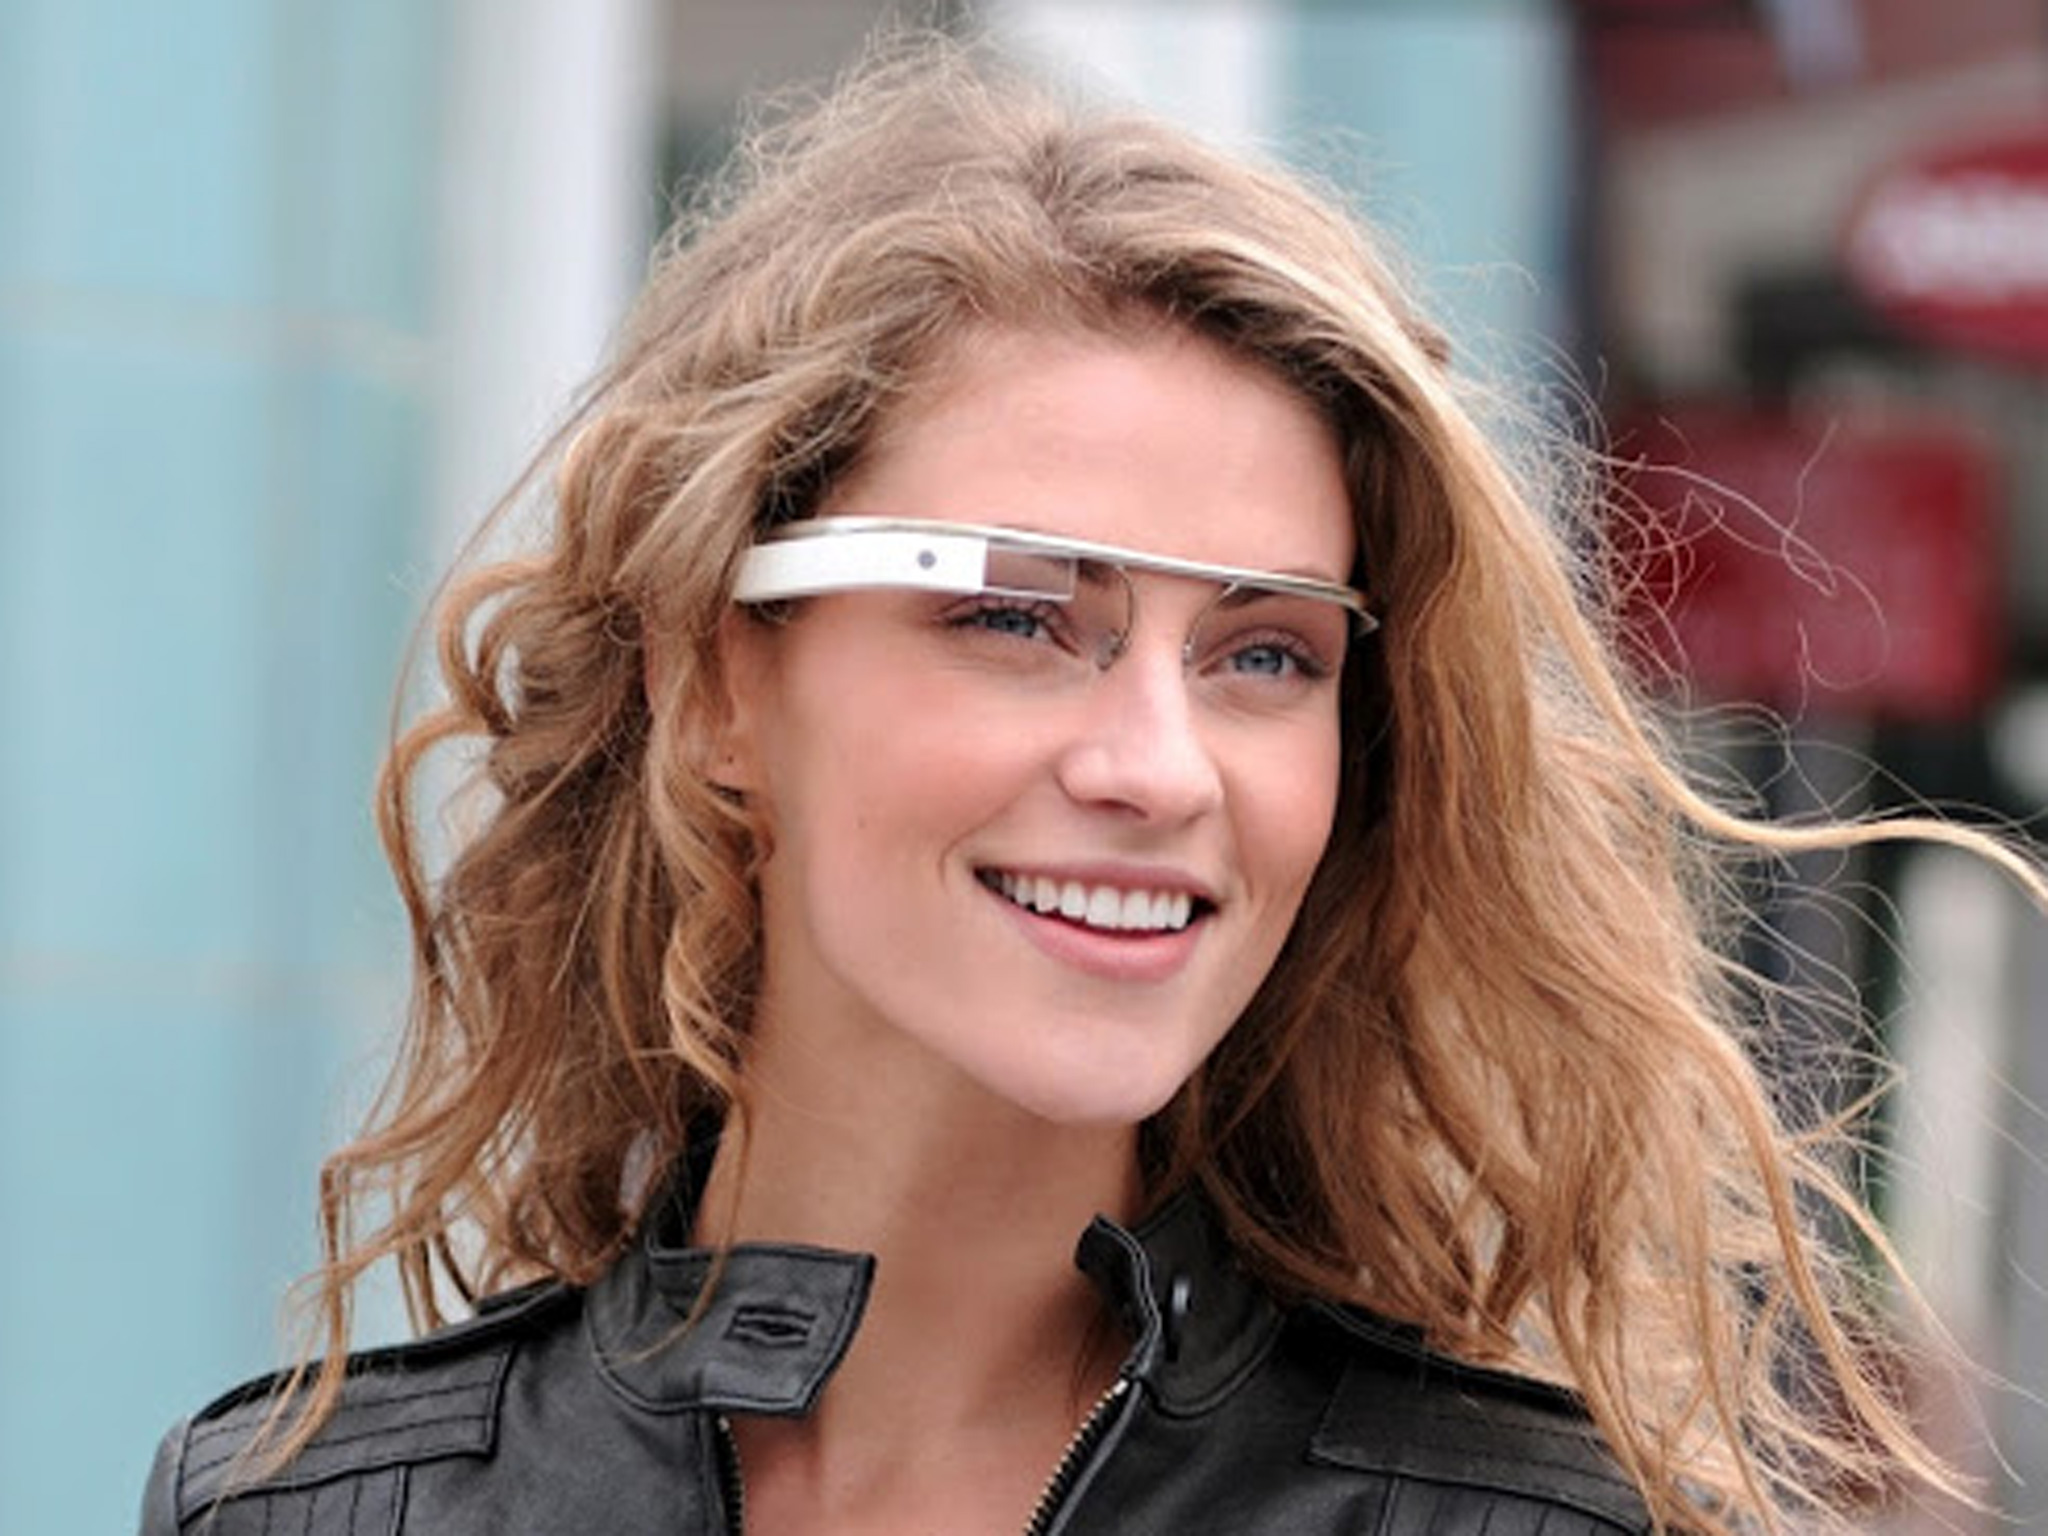 Une version 2.0 des Google Glass pour le 1er trimestre 2016 ?